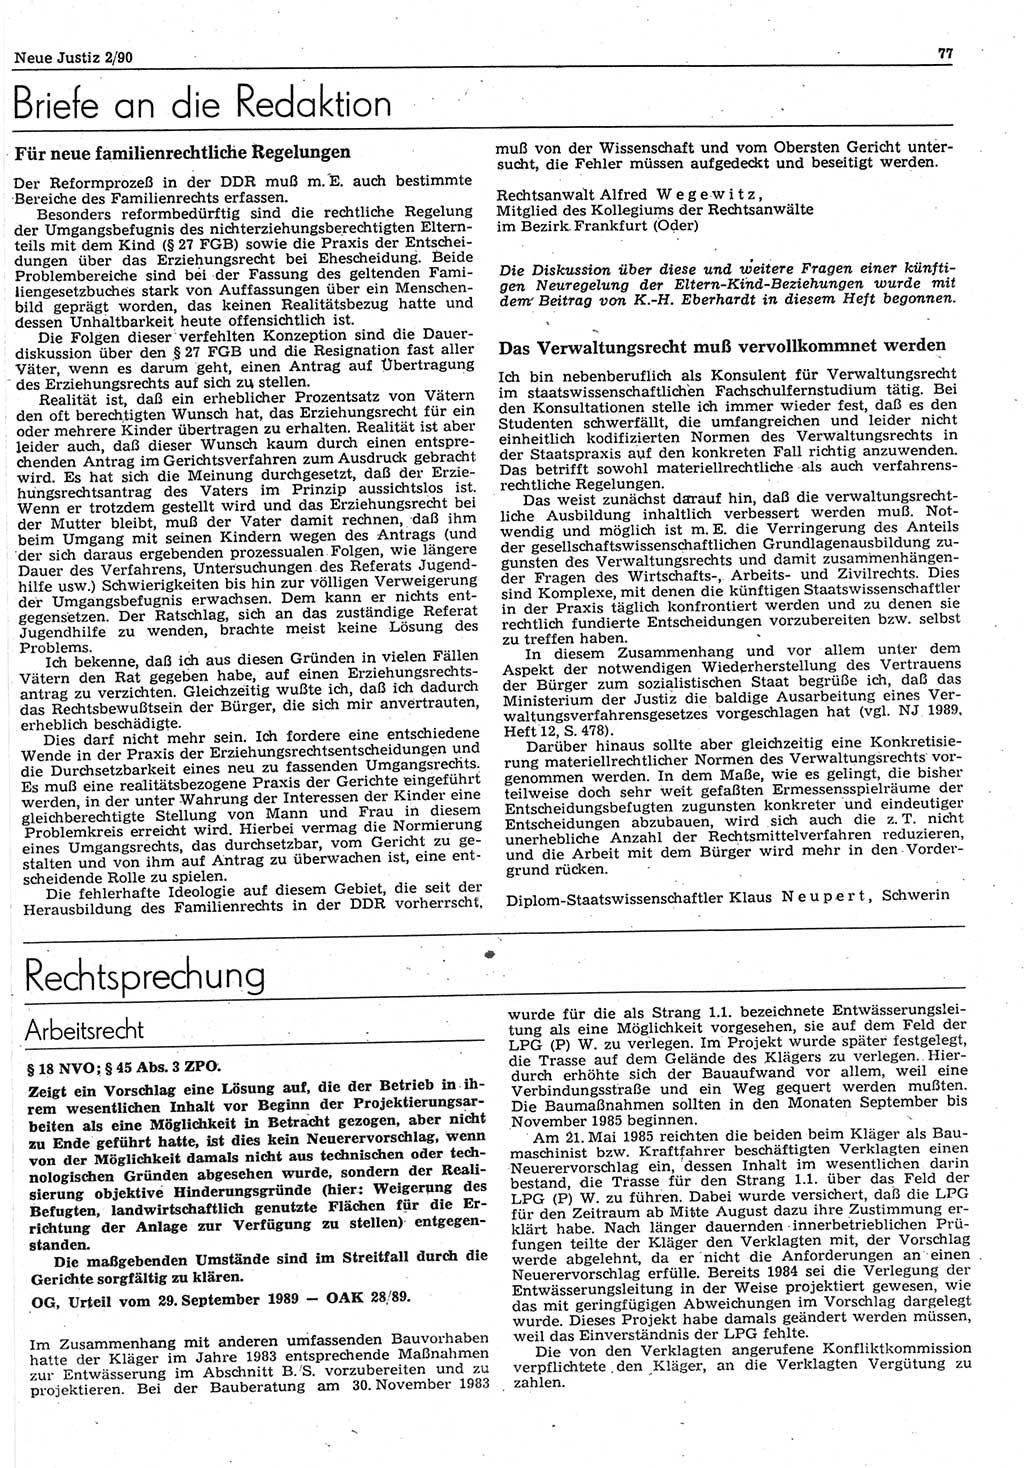 Neue Justiz (NJ), Zeitschrift für Rechtsetzung und Rechtsanwendung [Deutsche Demokratische Republik (DDR)], 44. Jahrgang 1990, Seite 77 (NJ DDR 1990, S. 77)